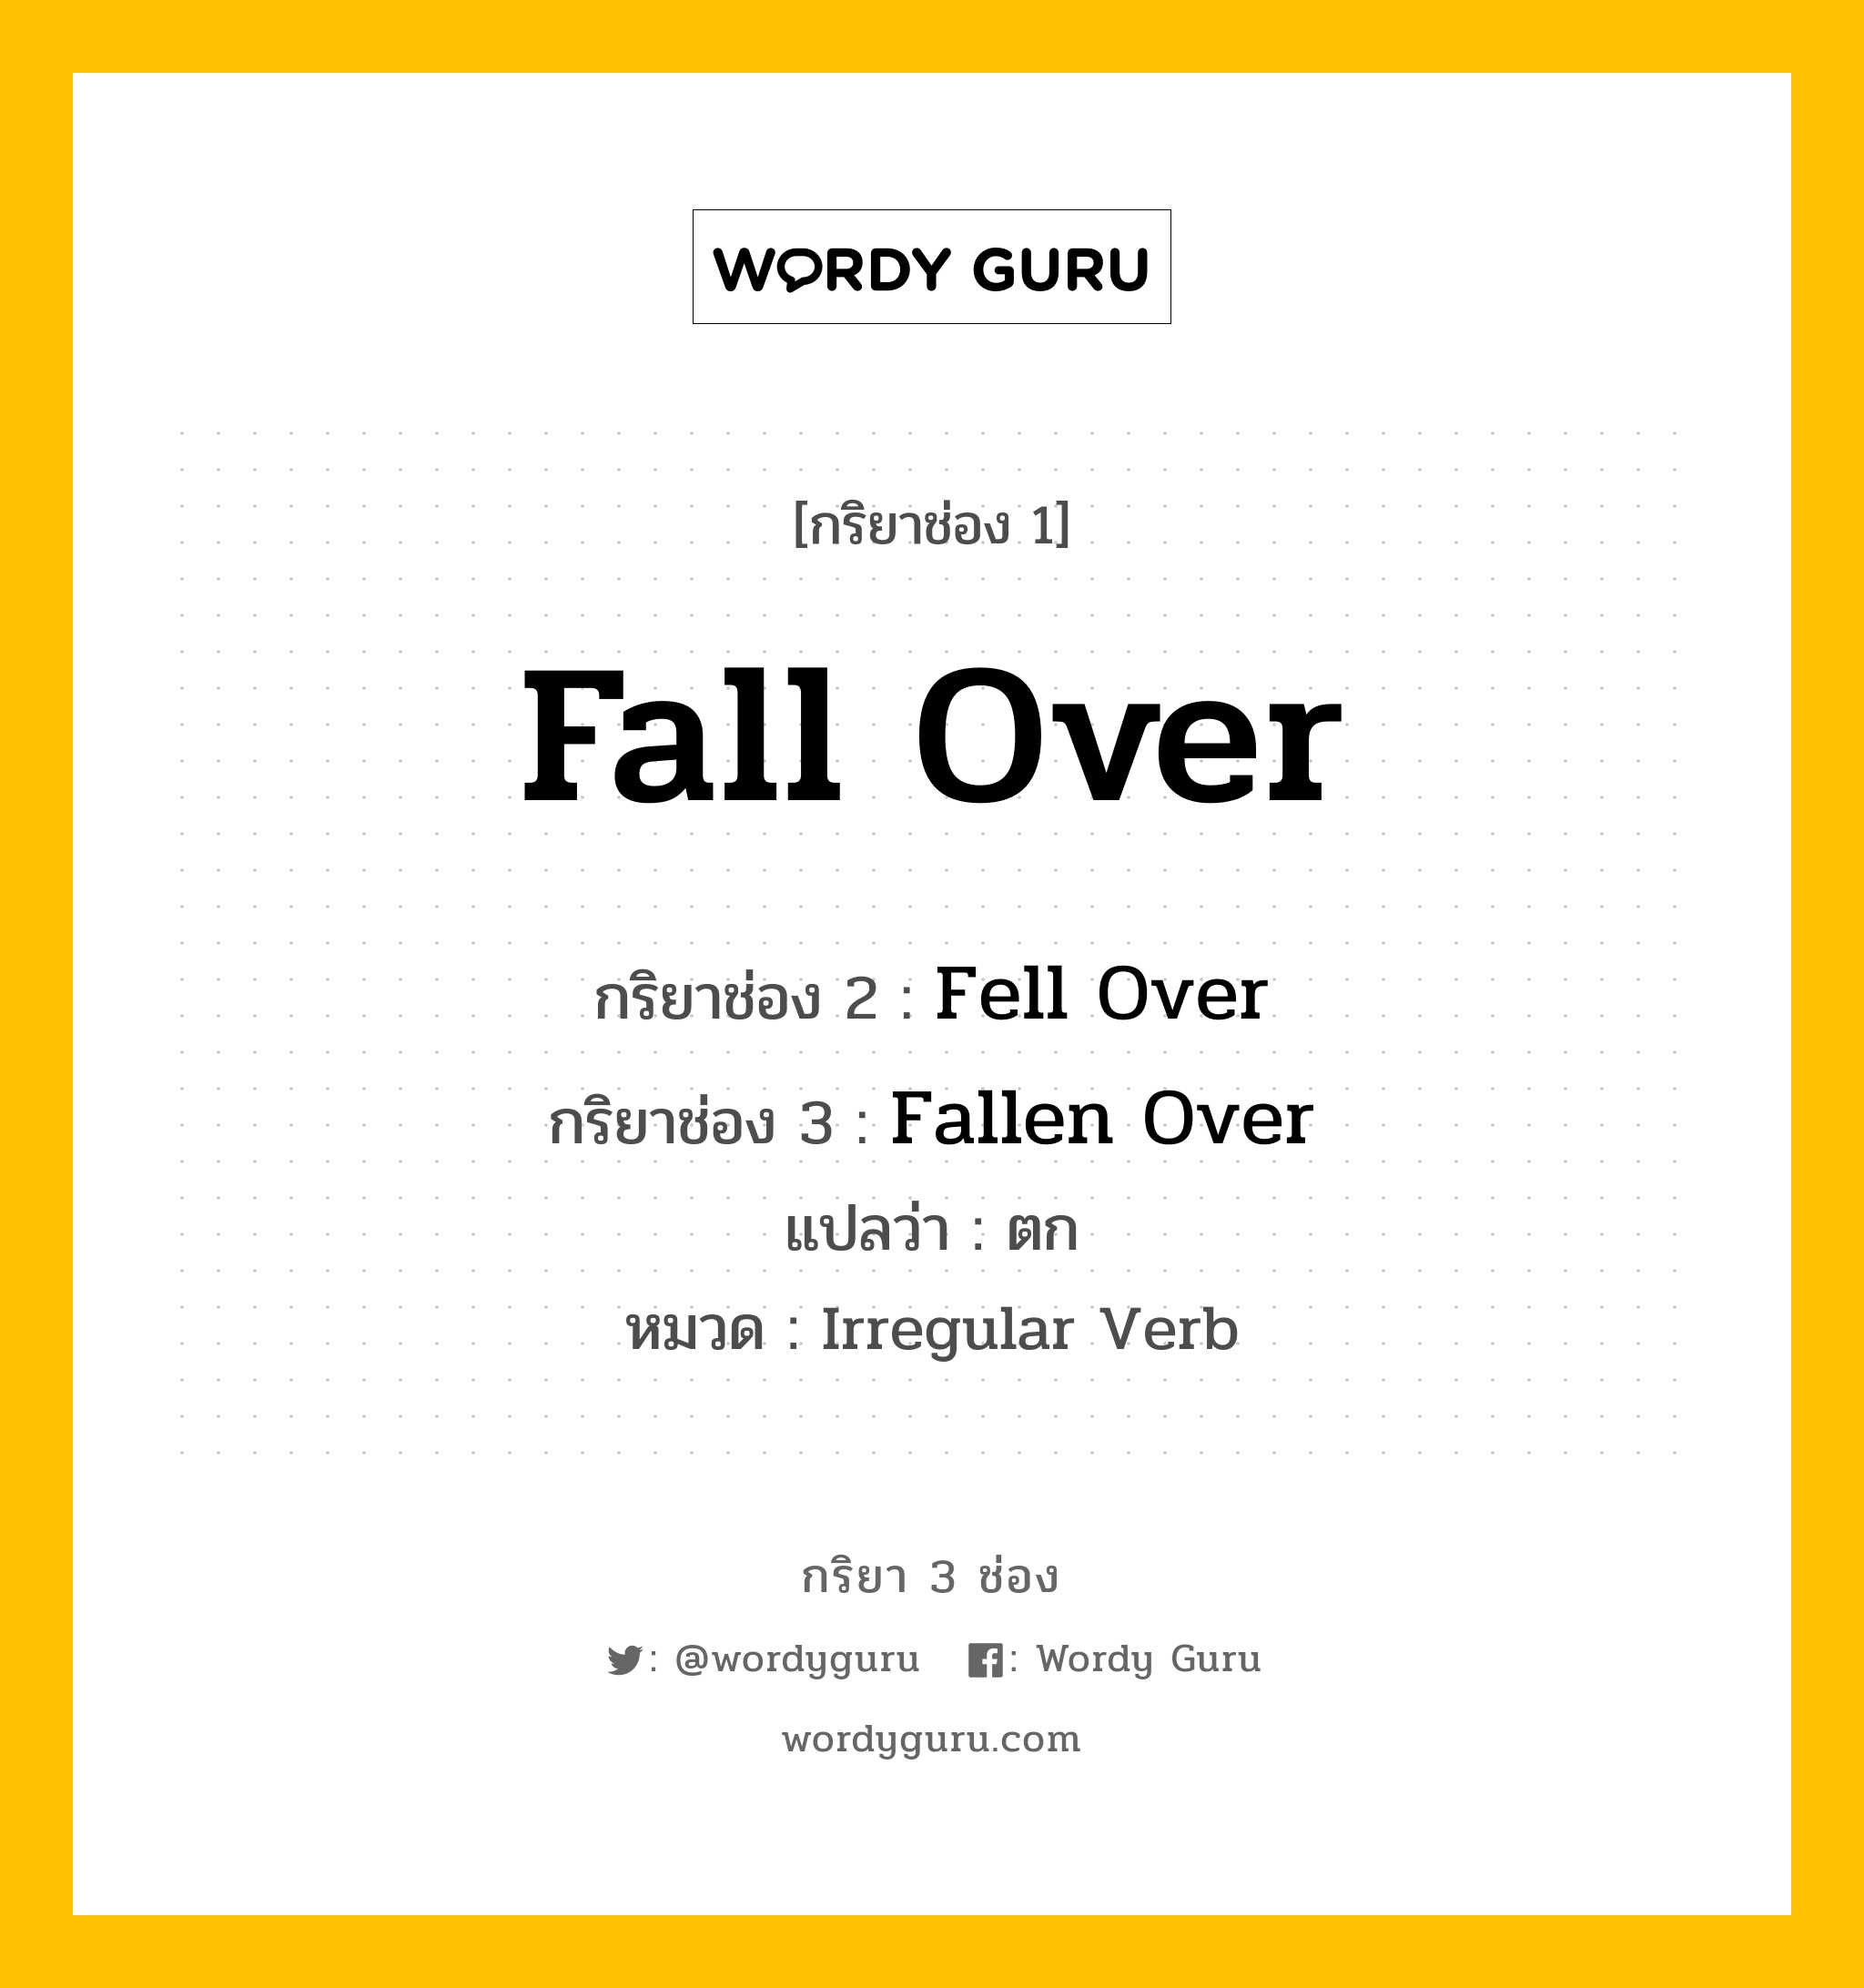 กริยา 3 ช่อง: Fall Over ช่อง 2 Fall Over ช่อง 3 คืออะไร, กริยาช่อง 1 Fall Over กริยาช่อง 2 Fell Over กริยาช่อง 3 Fallen Over แปลว่า ตก หมวด Irregular Verb หมวด Irregular Verb